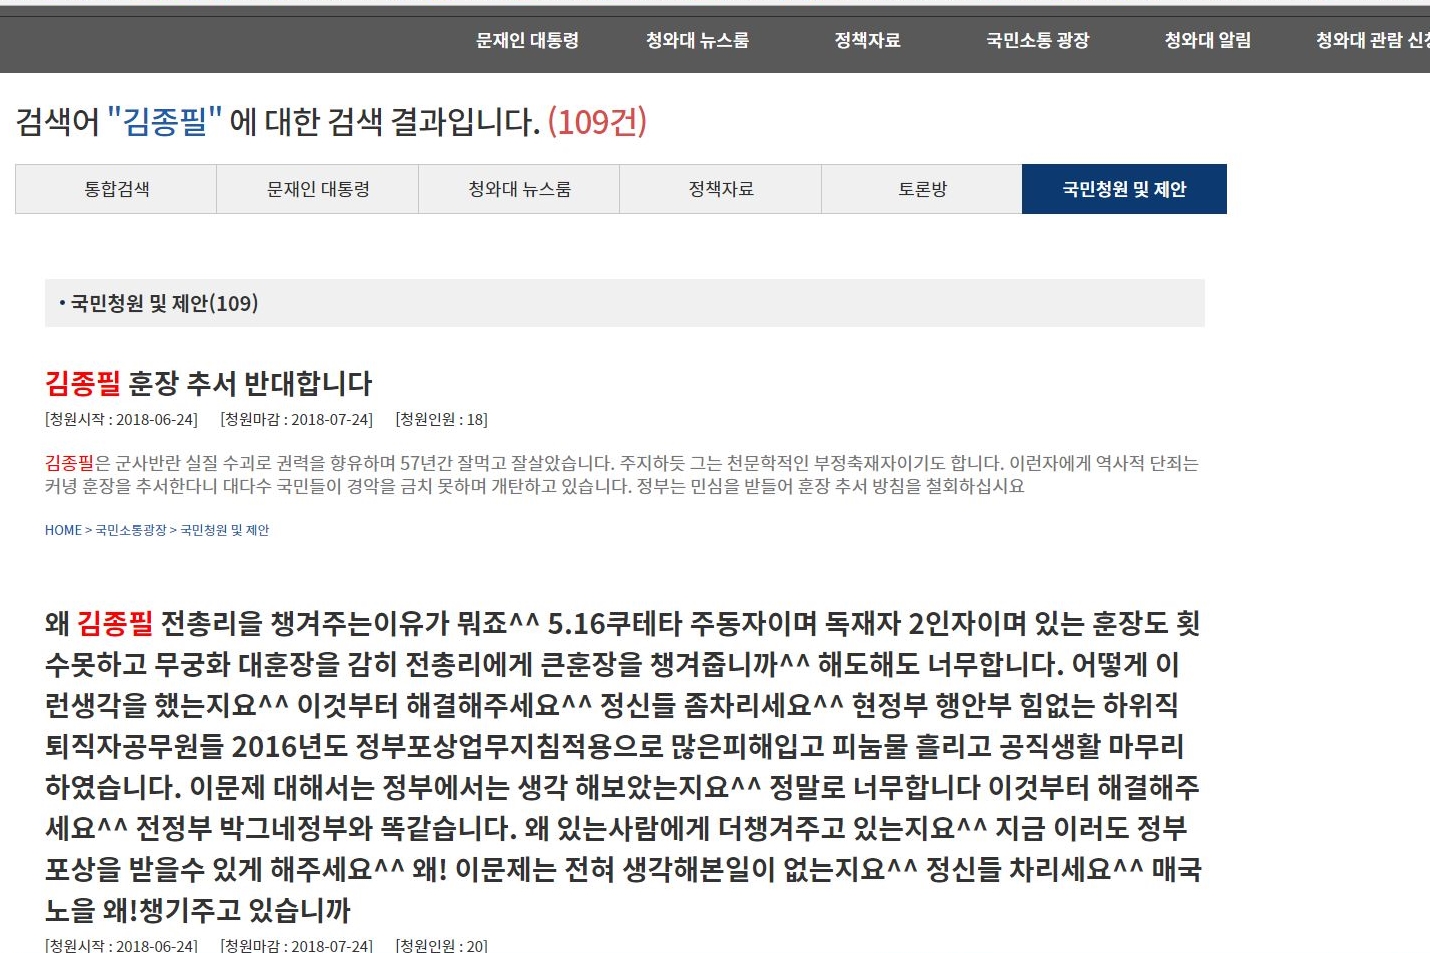 ▲ 청와대 국민청원 사이트 중 김종필 전 총리에 관련된 청원.